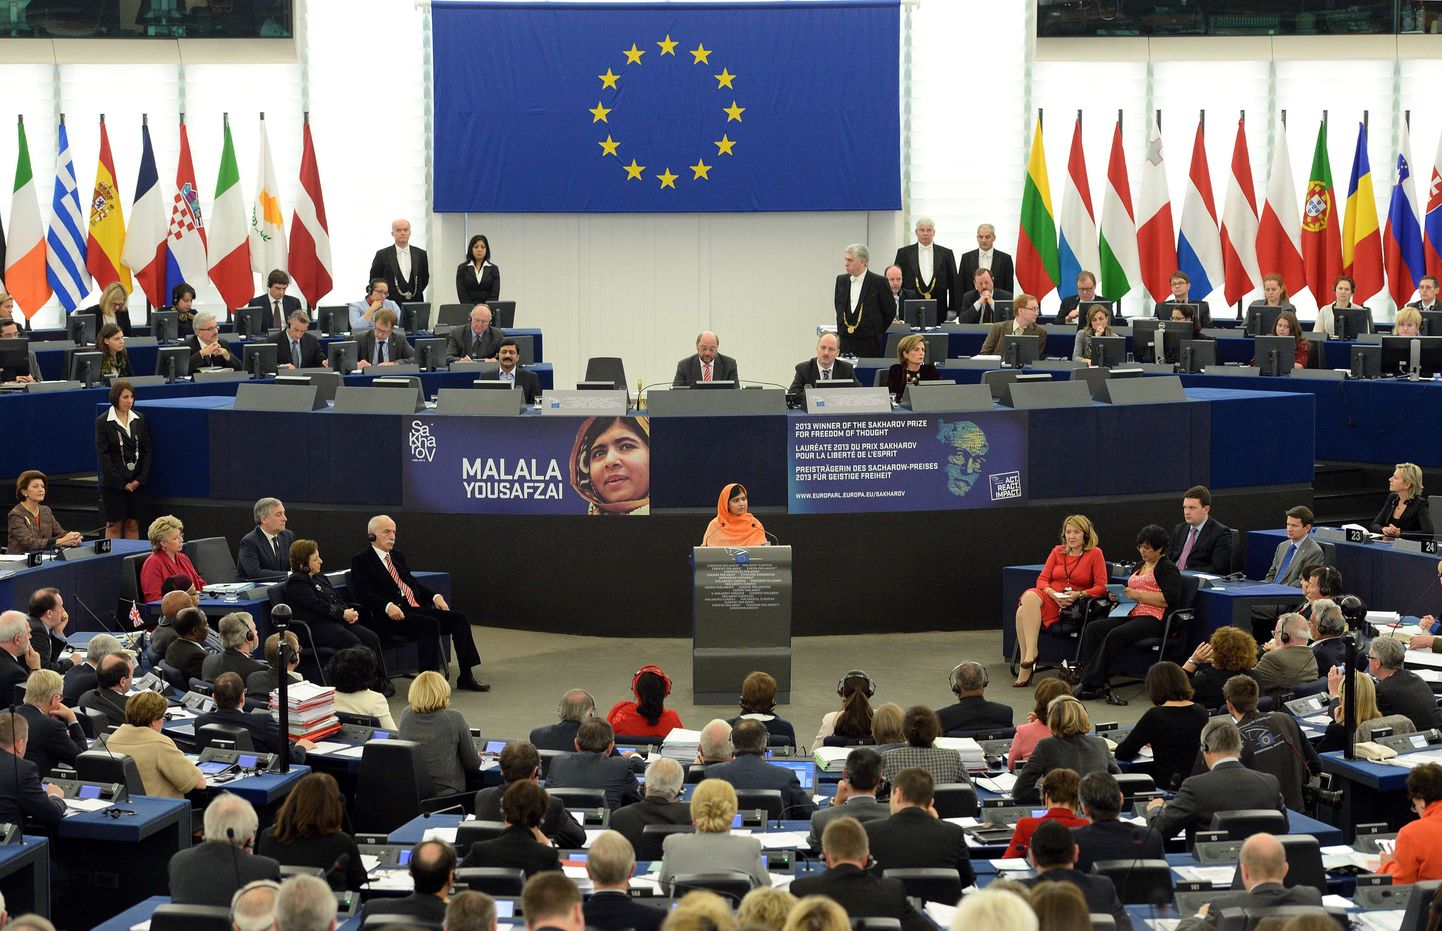 Mullune Sahharovi preemia võitja Malala europarlamendis preemiat vastu võtmas.